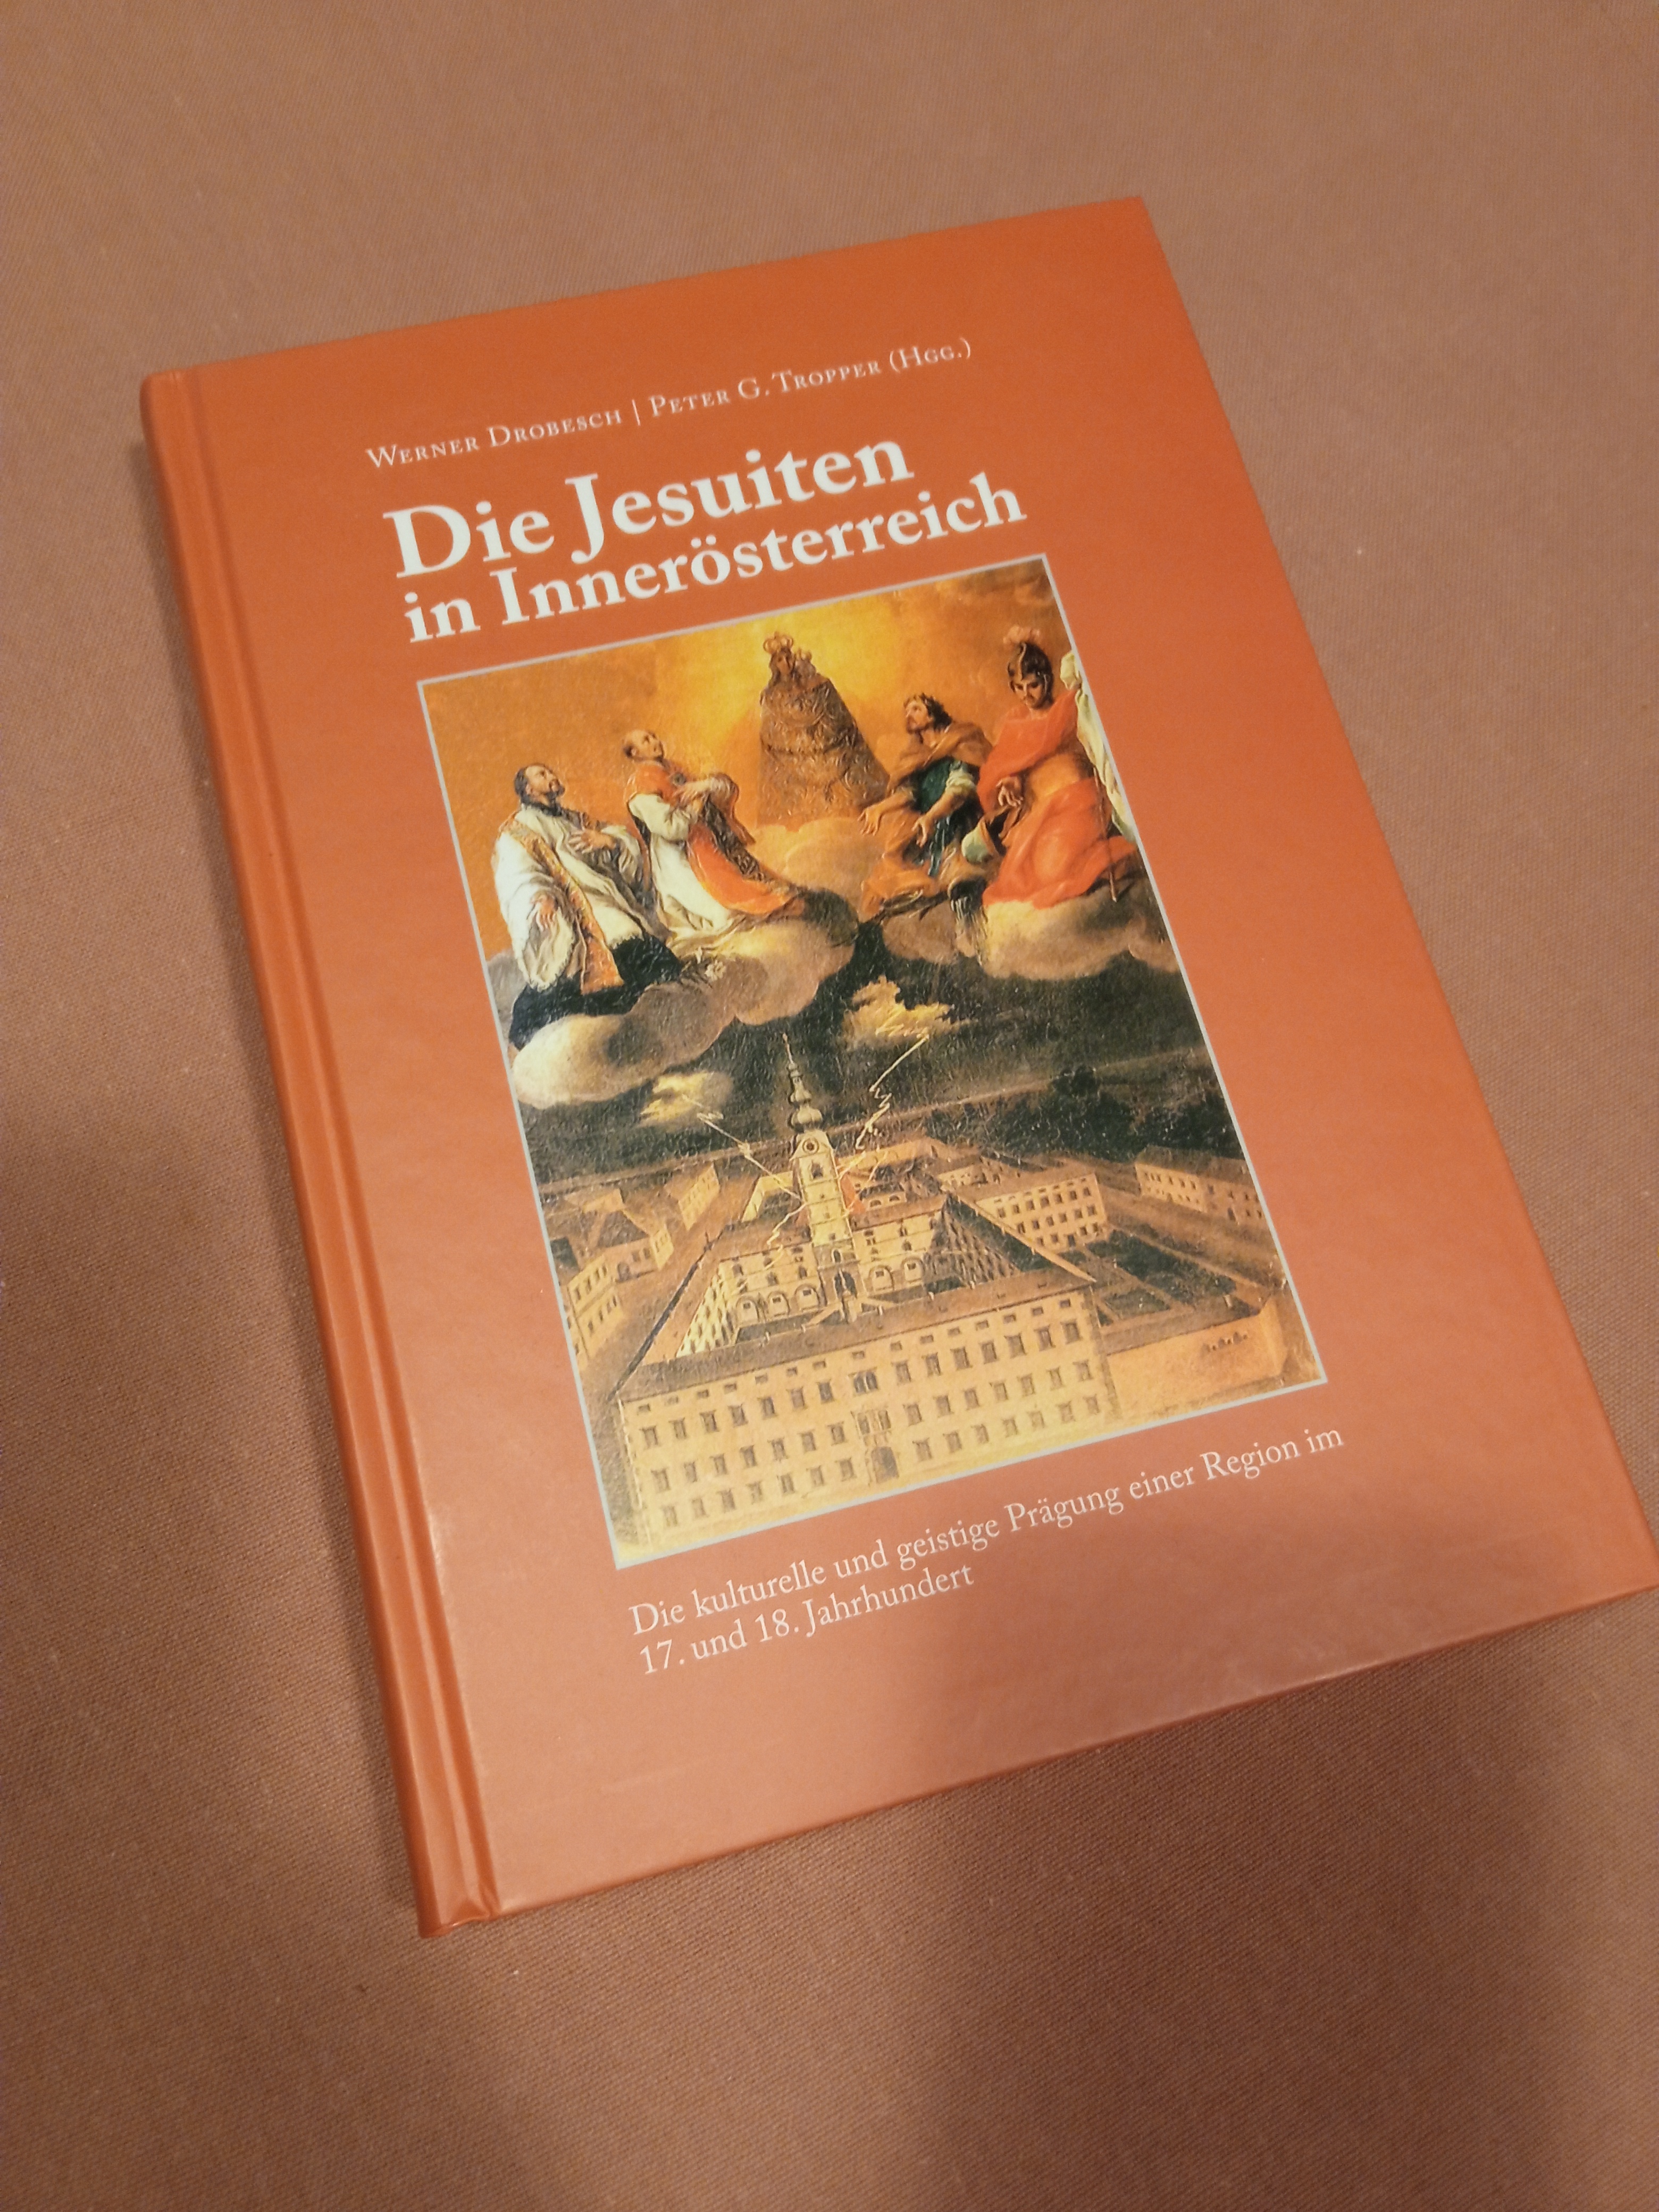 Werner Drobesch – Peter G. Tropper: Die Jesuiten in Innerösterreich. Die kulturelle und geistige Prägung einer Region im 17. und 18. Jahrhundert. Hermagoras Verlag, 2006. 